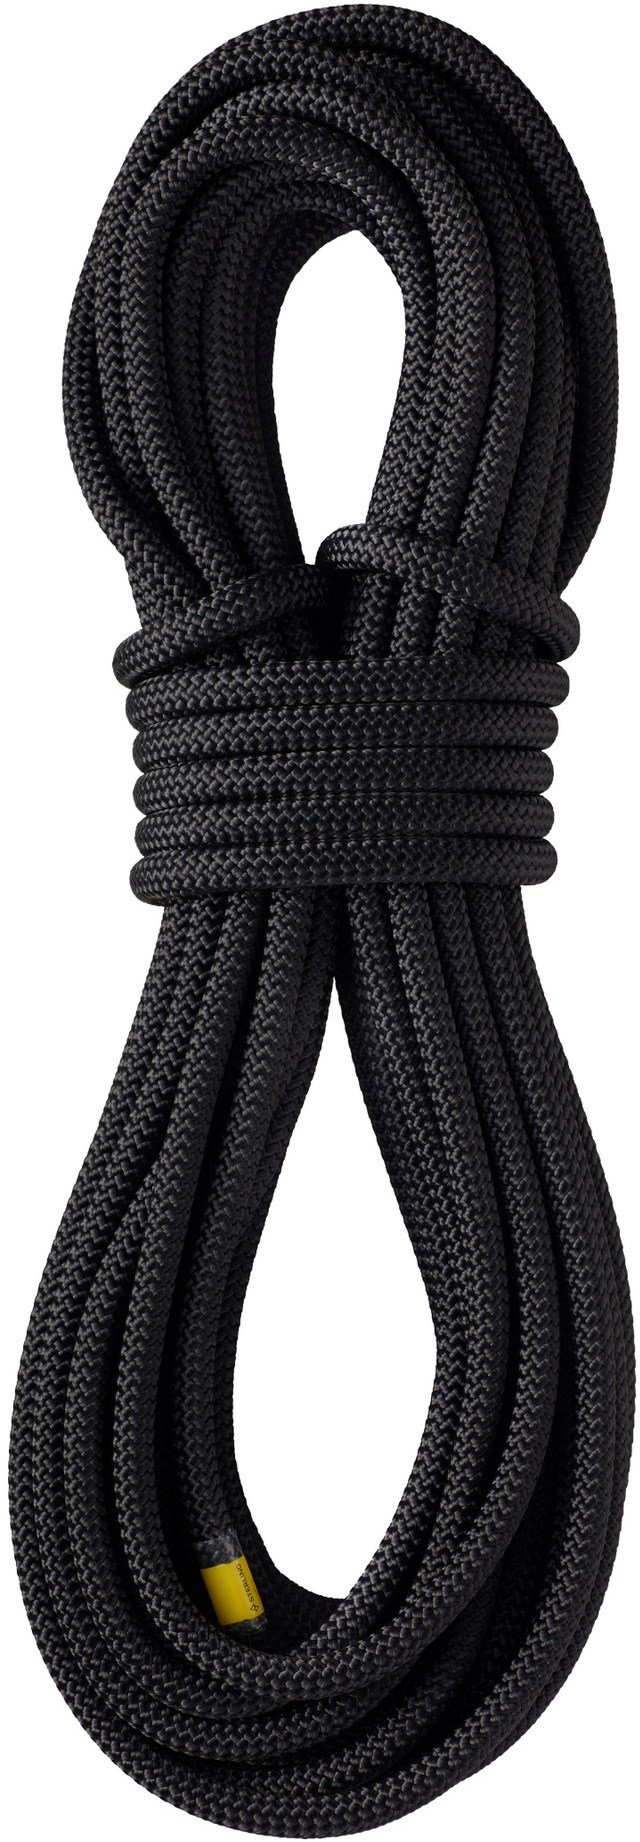 WorkPro 10 мм x 46 м несухая веревка Sterling, черный